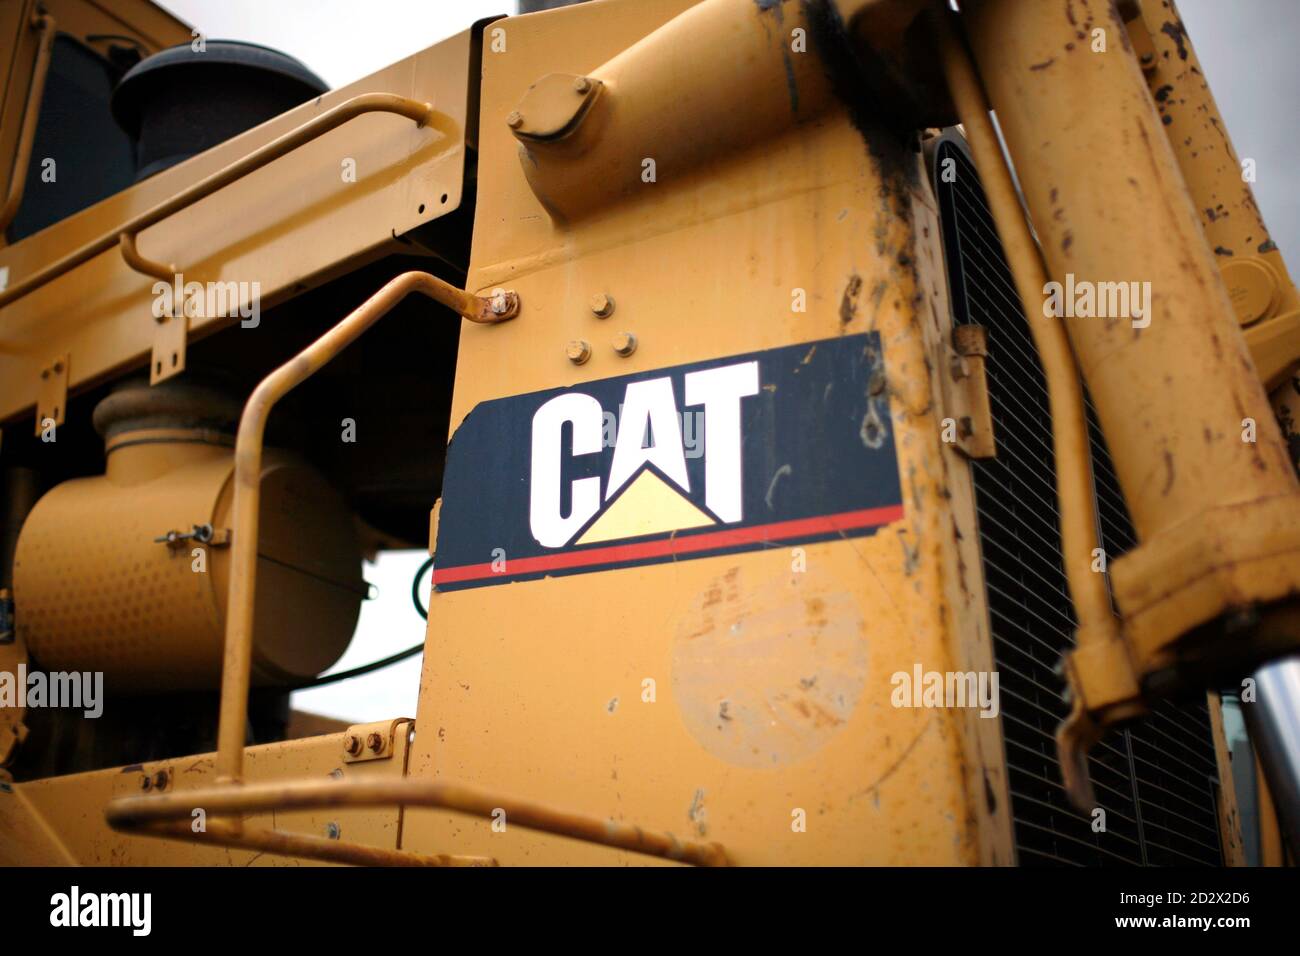 Das Logo auf einem Stück von Caterpillar Baumaschinen ist ein Lagerplatz in Denver in dieser 22. Juli 2008 Datei Foto abgebildet. Bau und Bergbau Ausrüstungsfirma Caterpillar Inc. sagte am 26. Januar 2009, dass Quartalsergebnis mehr als 32 Prozent fielen und warnte vor ein hartes Jahr voraus als der Abschwung, der in den Vereinigten Staaten begann Metastasen in einer ausgewachsenen globalen Rezession, die seine Erdbewegungsmaschinen Verkaufsschlager. Caterpillar angekündigt, dass es etwa 17.000 Arbeiter Schnitten und buy-out 2.500 andere, um Kostensenkung gegenüber was vorhergesagt ist wäre das schwächste Jahr für Stockfoto